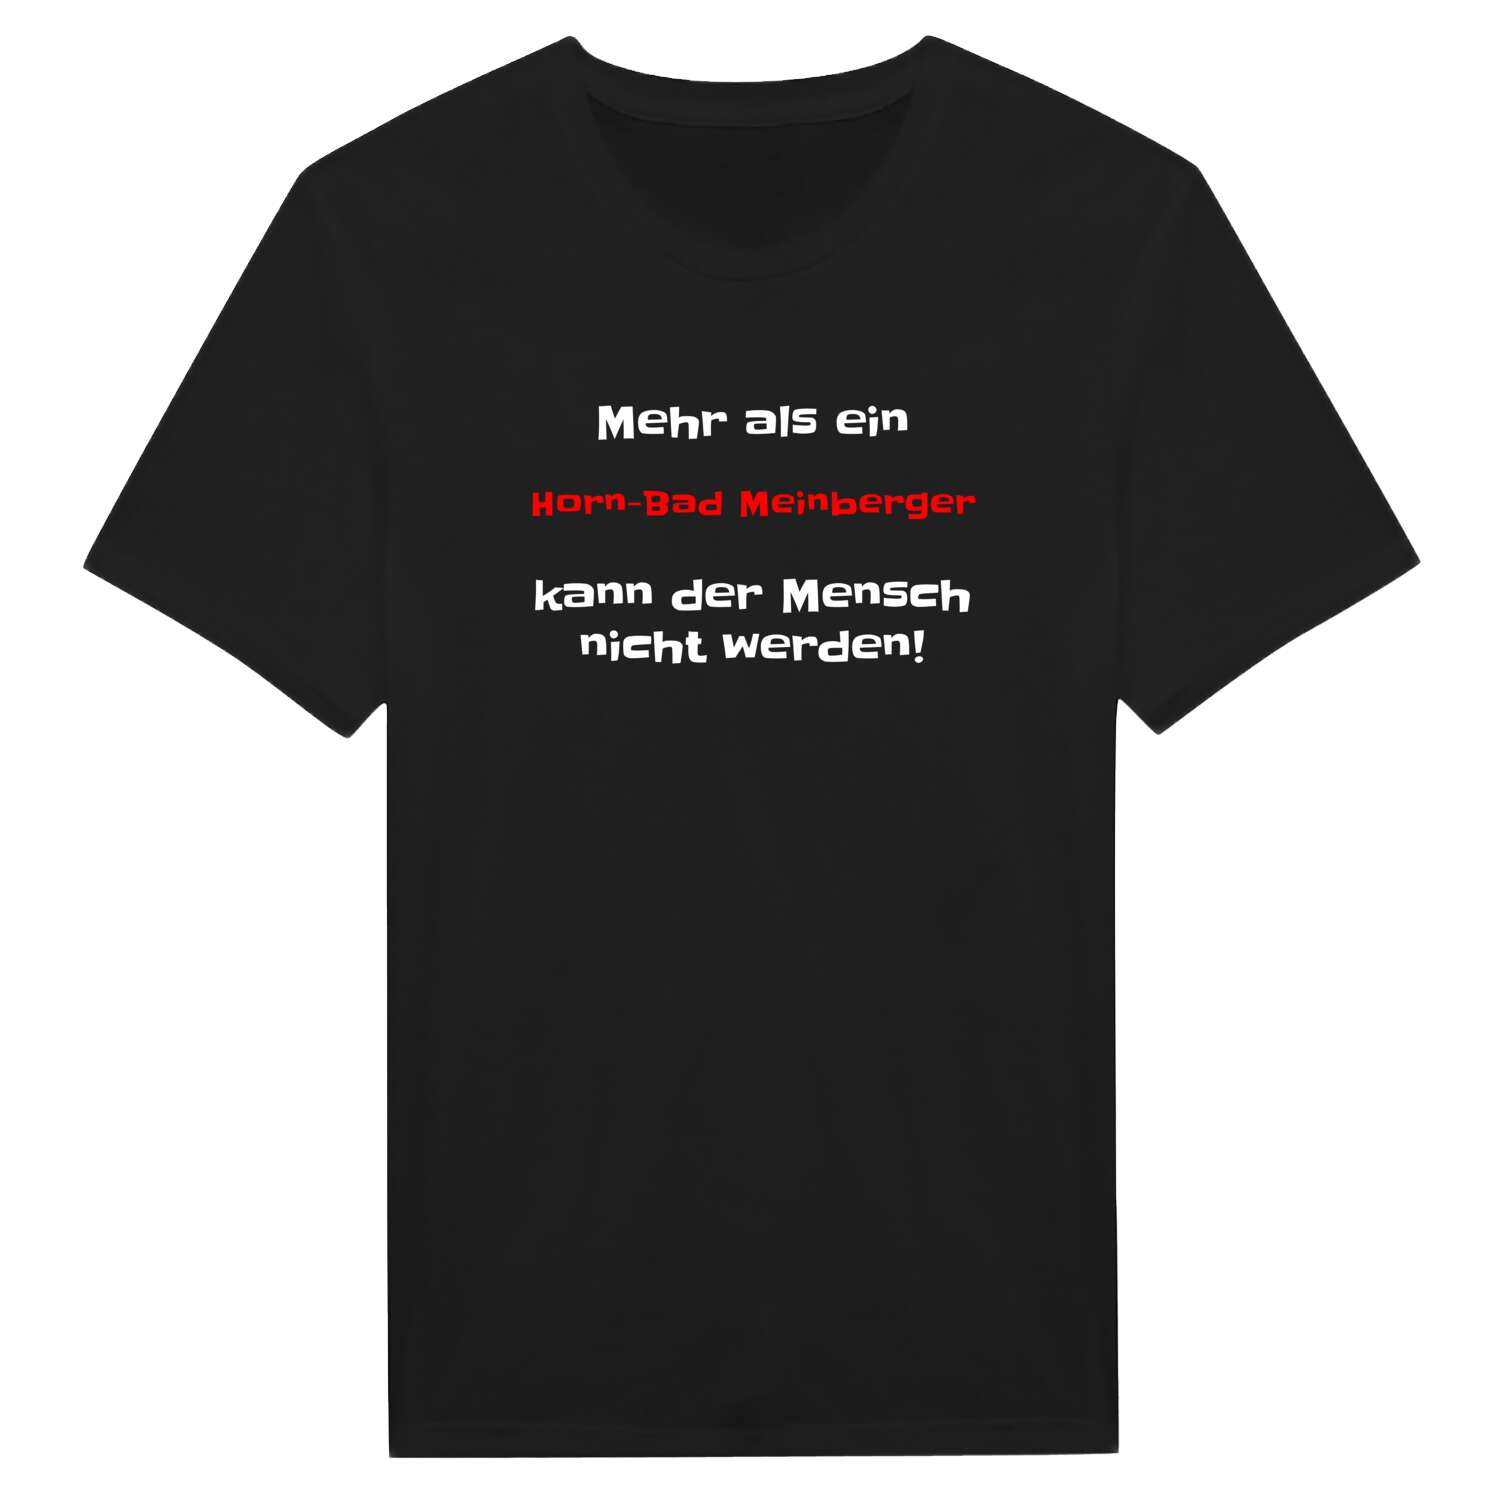 Horn-Bad Meinberg T-Shirt »Mehr als ein«